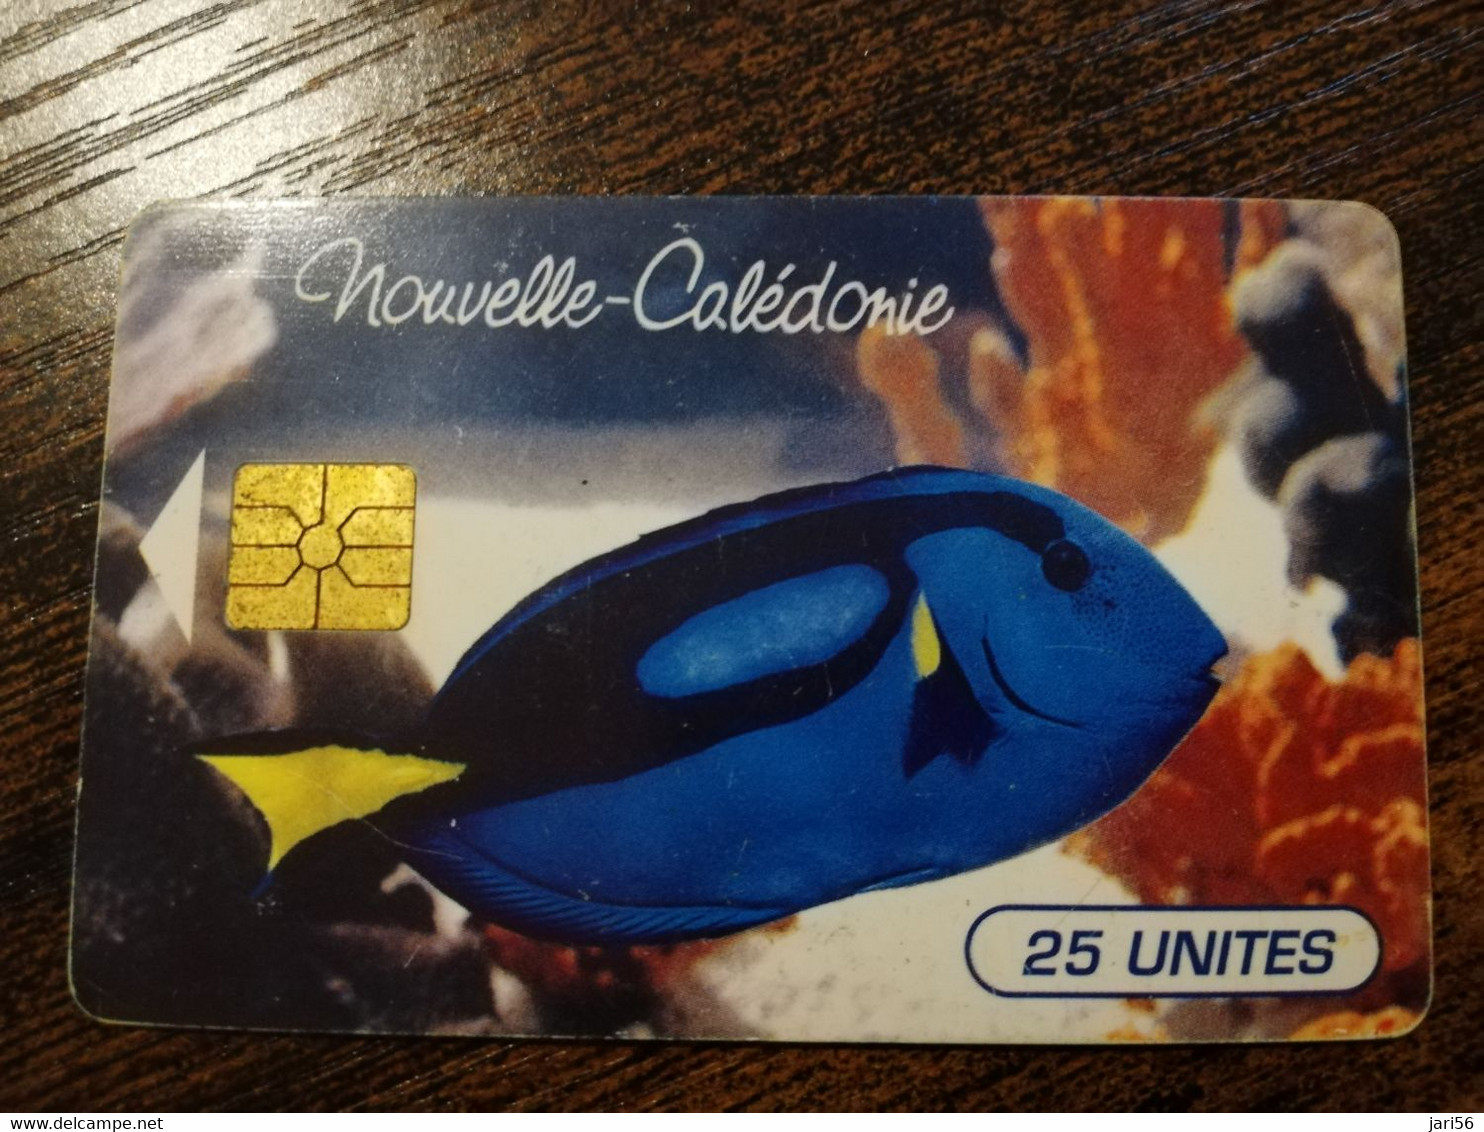 NOUVELLE CALEDONIA  CHIP CARD 25  UNITS   TROPICAL FISH BLEU    LOT 00119    ** 6782 ** - Nouvelle-Calédonie